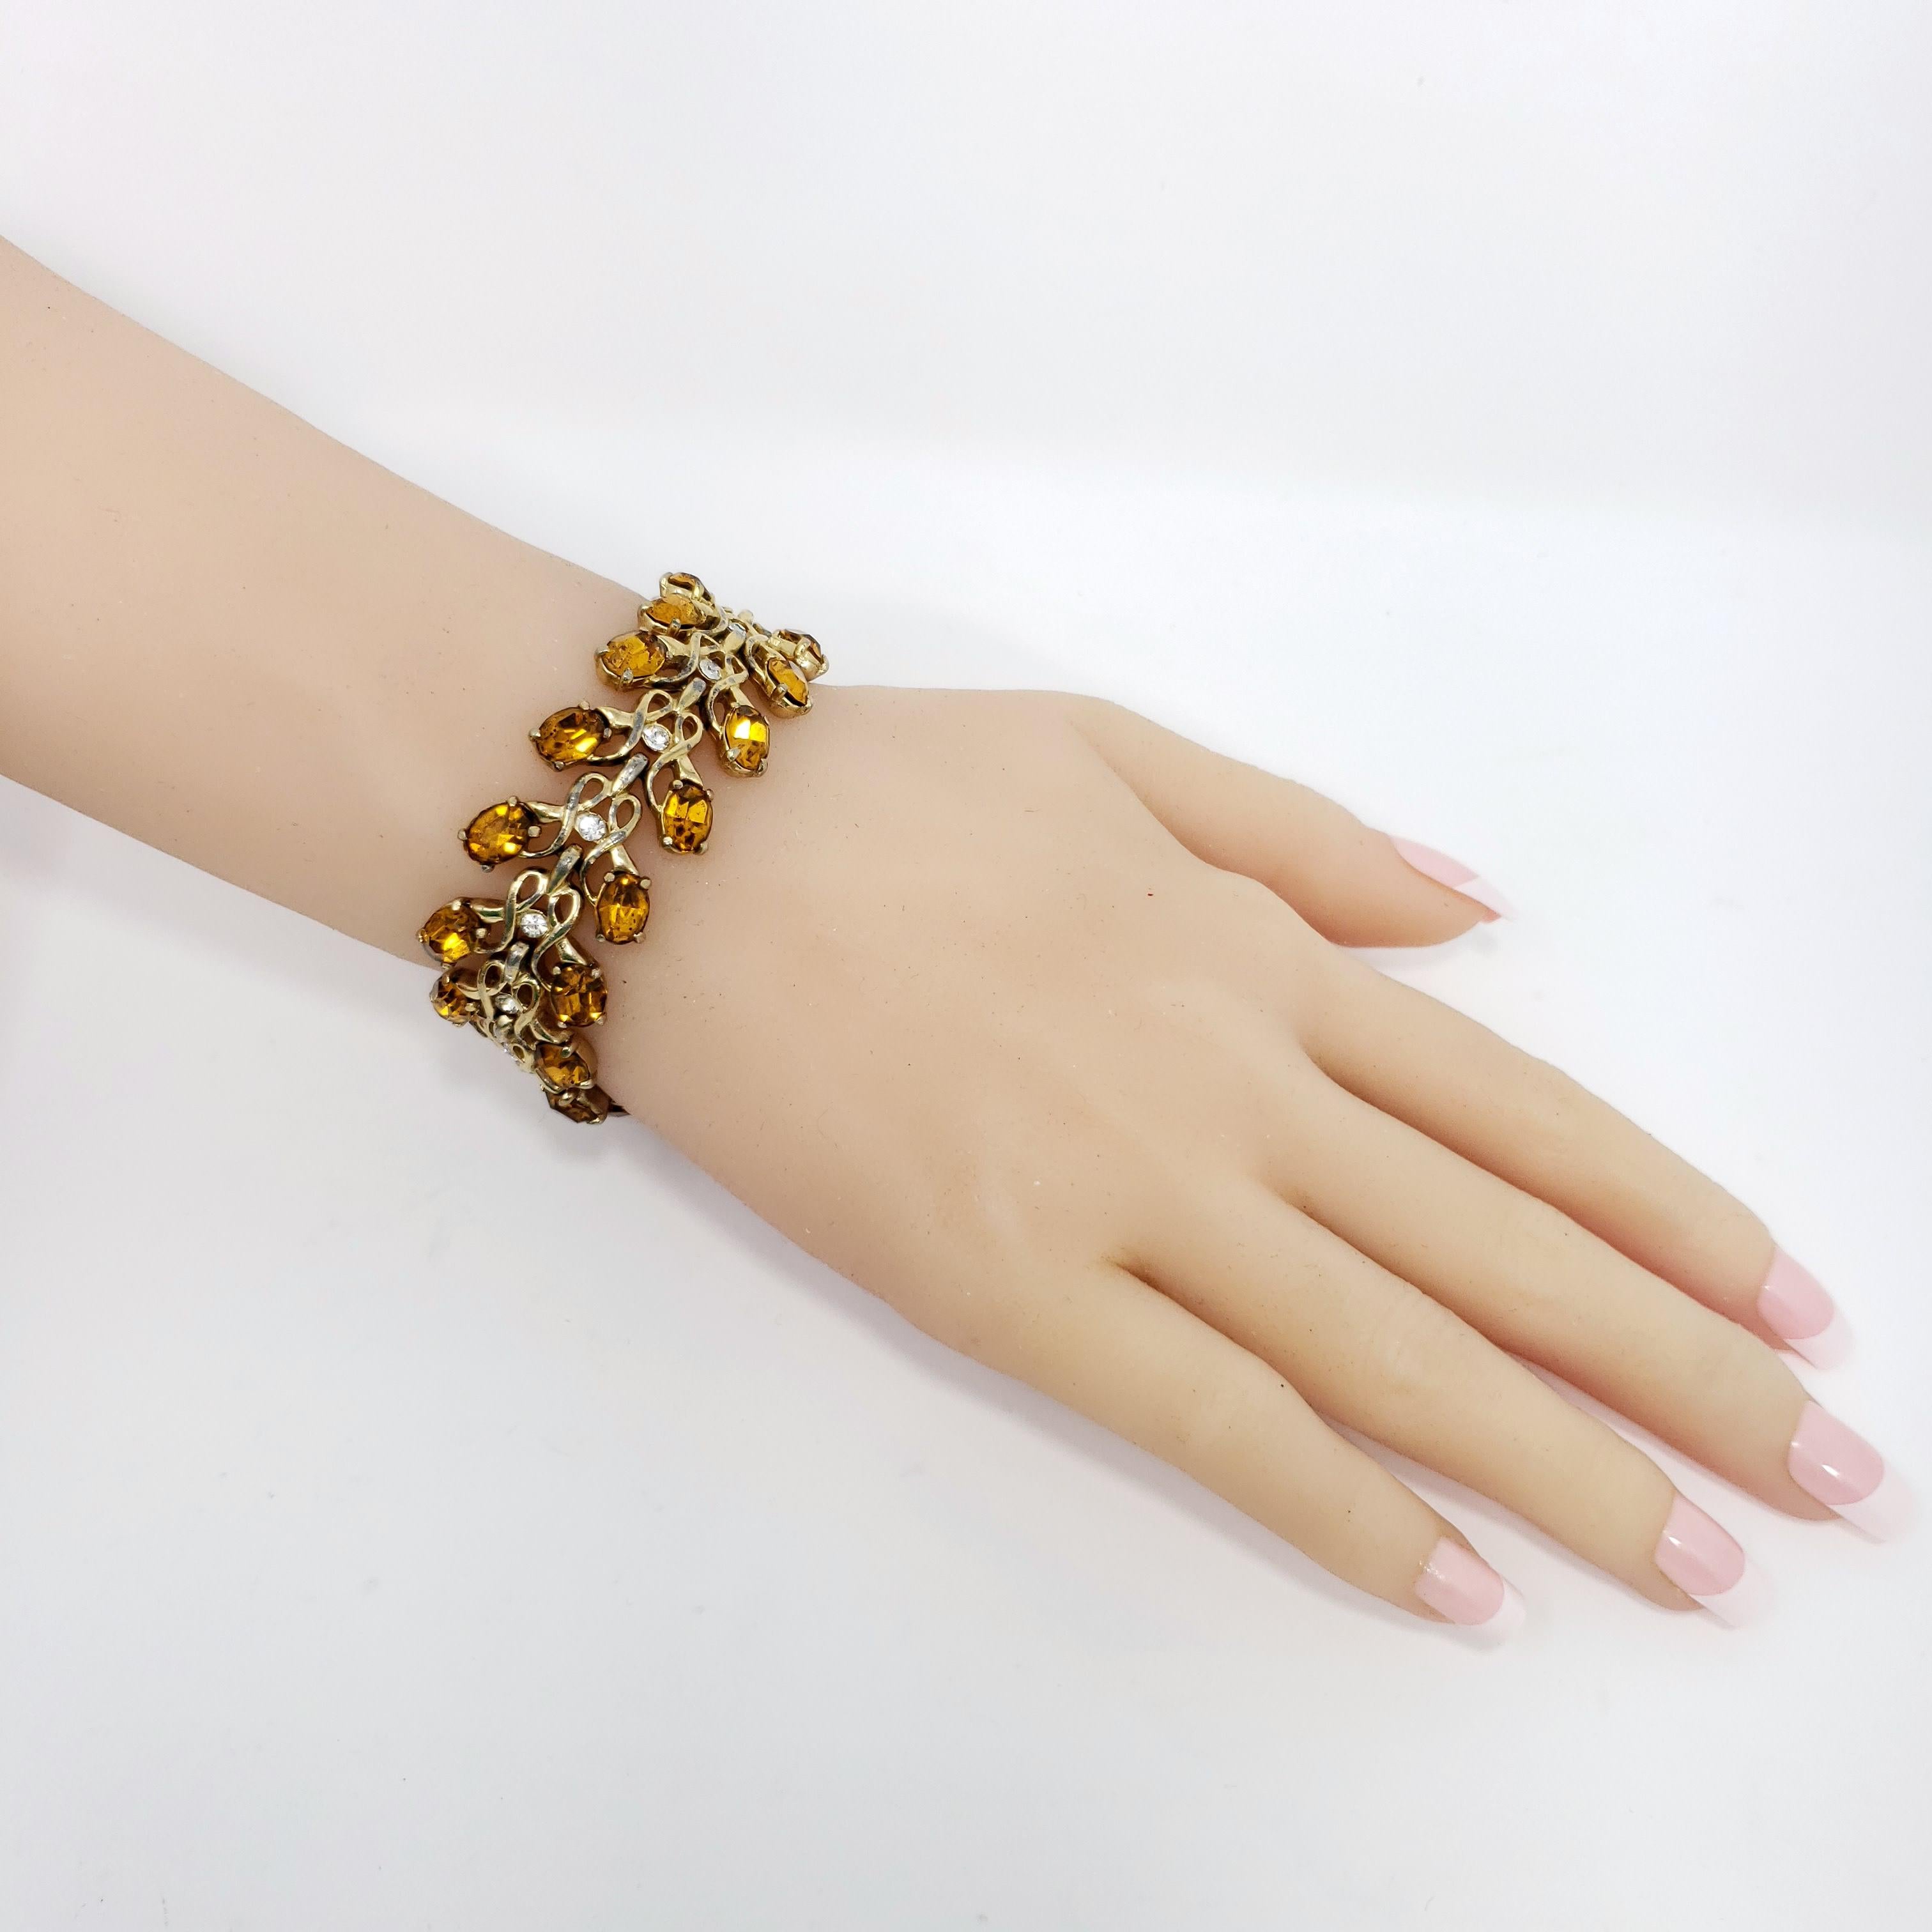 Stilvolles Retro-Armband mit goldenen Gliedern, verziert mit Bernstein und klaren Kristallen.

Vergoldet